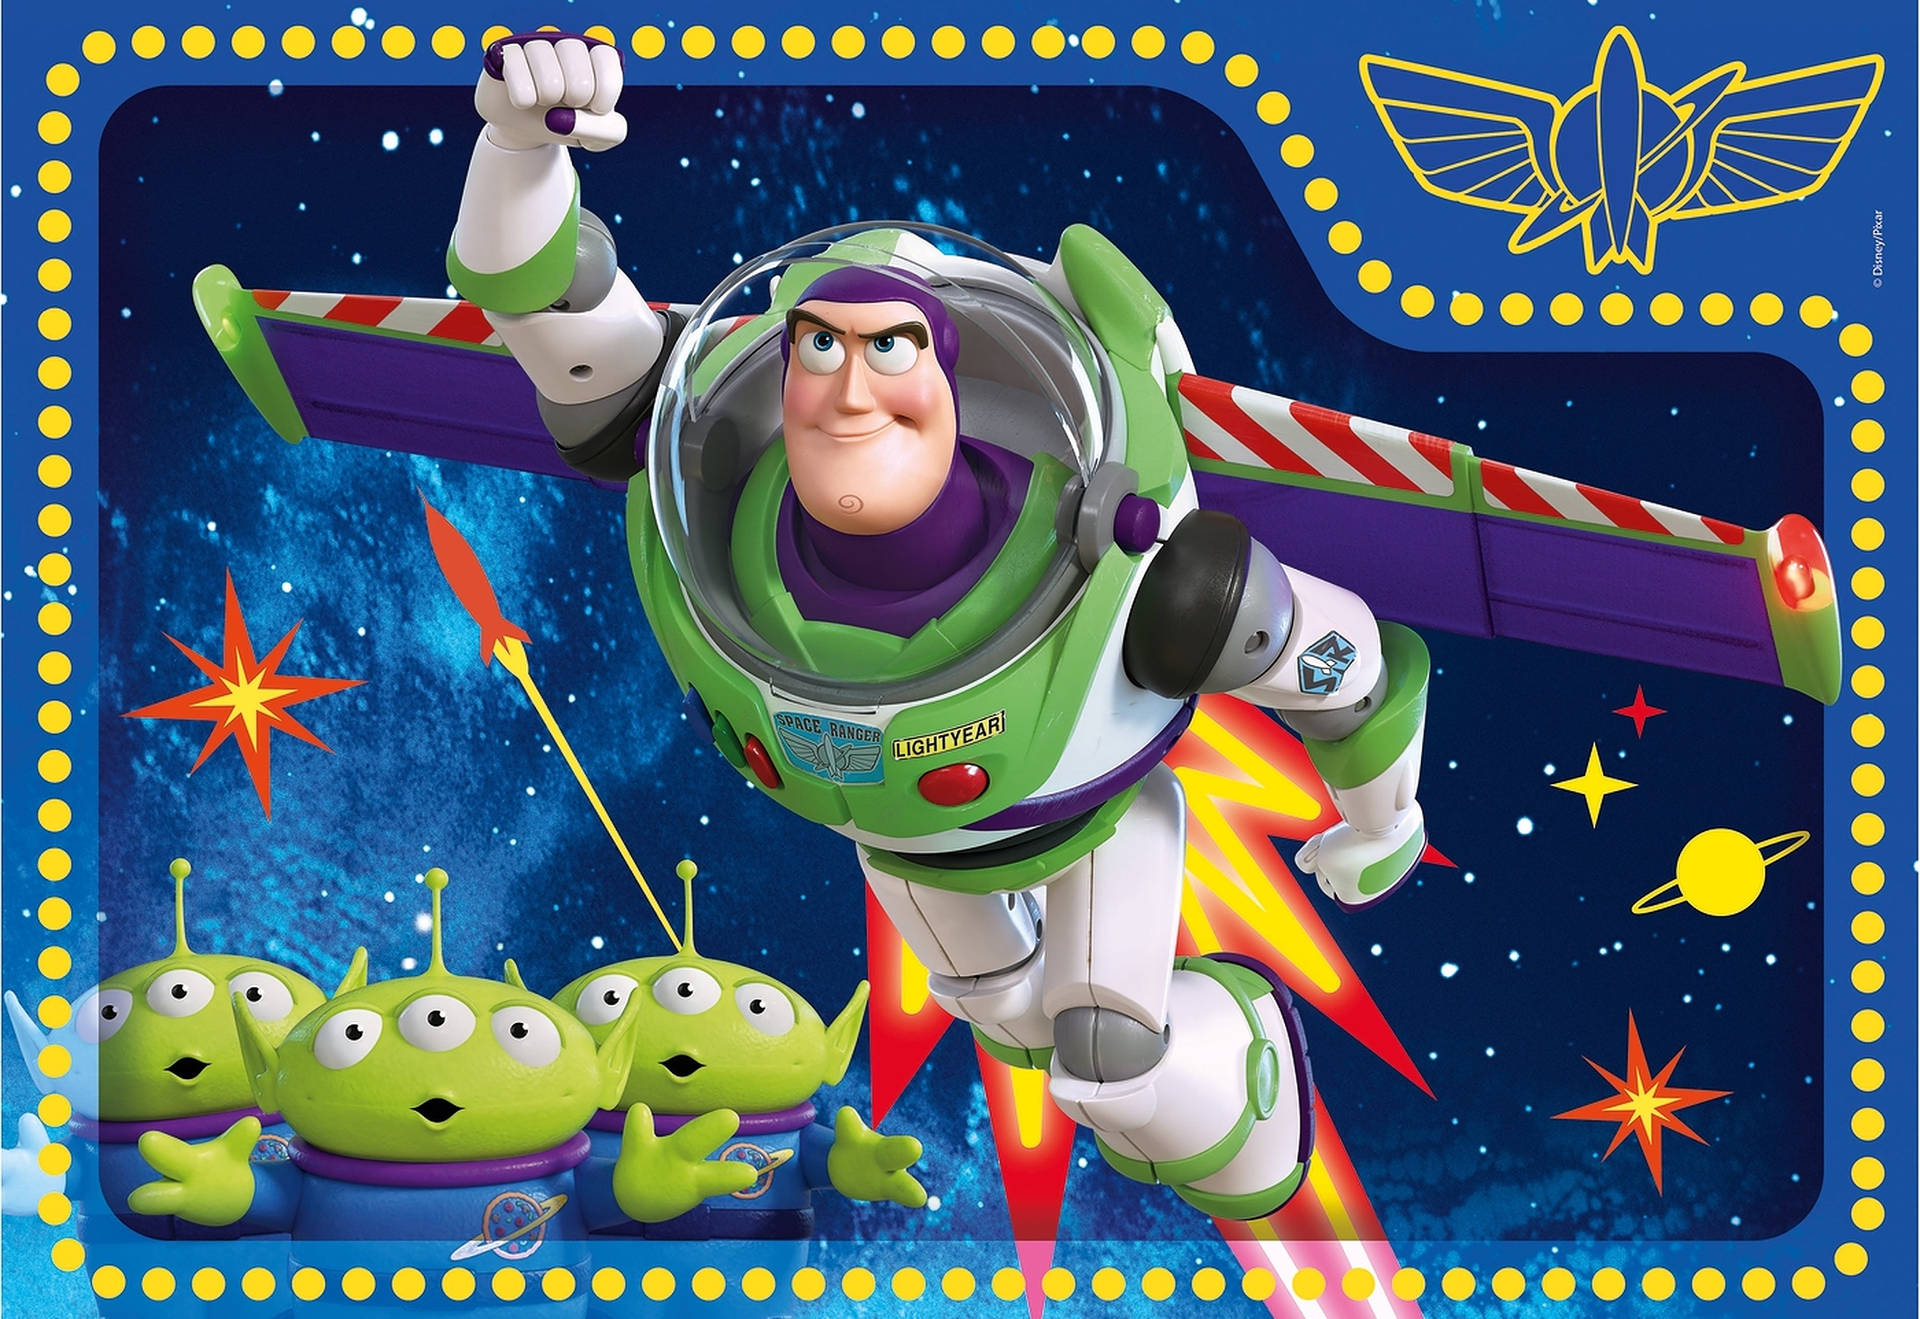 Toystory-aliens Med Buzz Lightyear På Bakgrundsbilden. Wallpaper